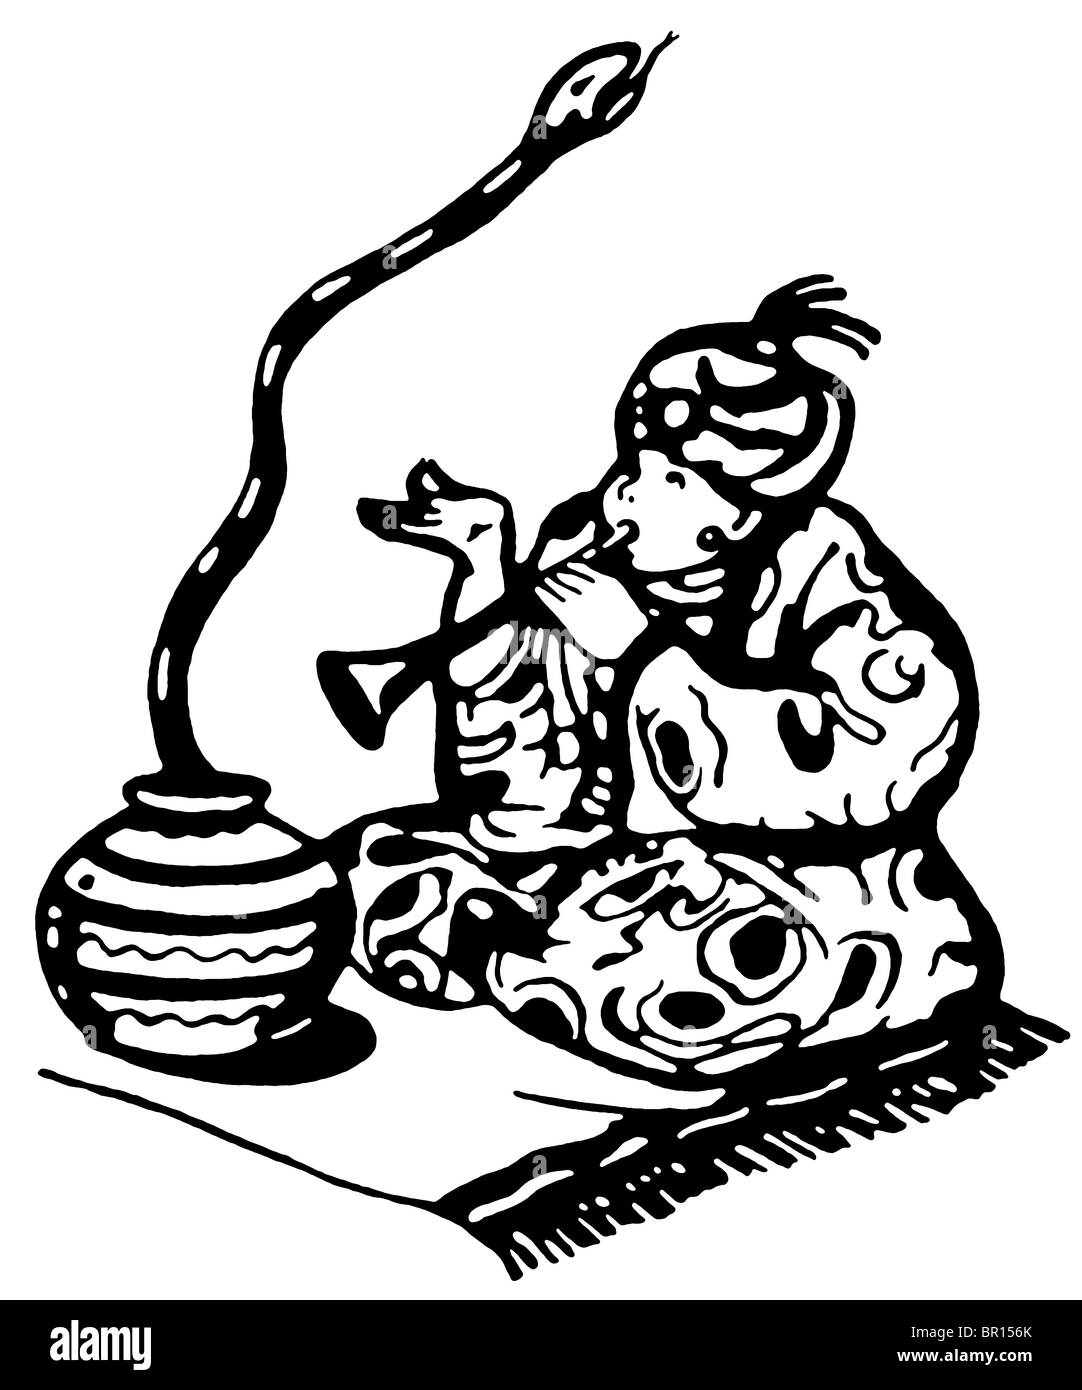 Une version noir et blanc d'un homme poussant un serpent de son panier avec de la musique Banque D'Images